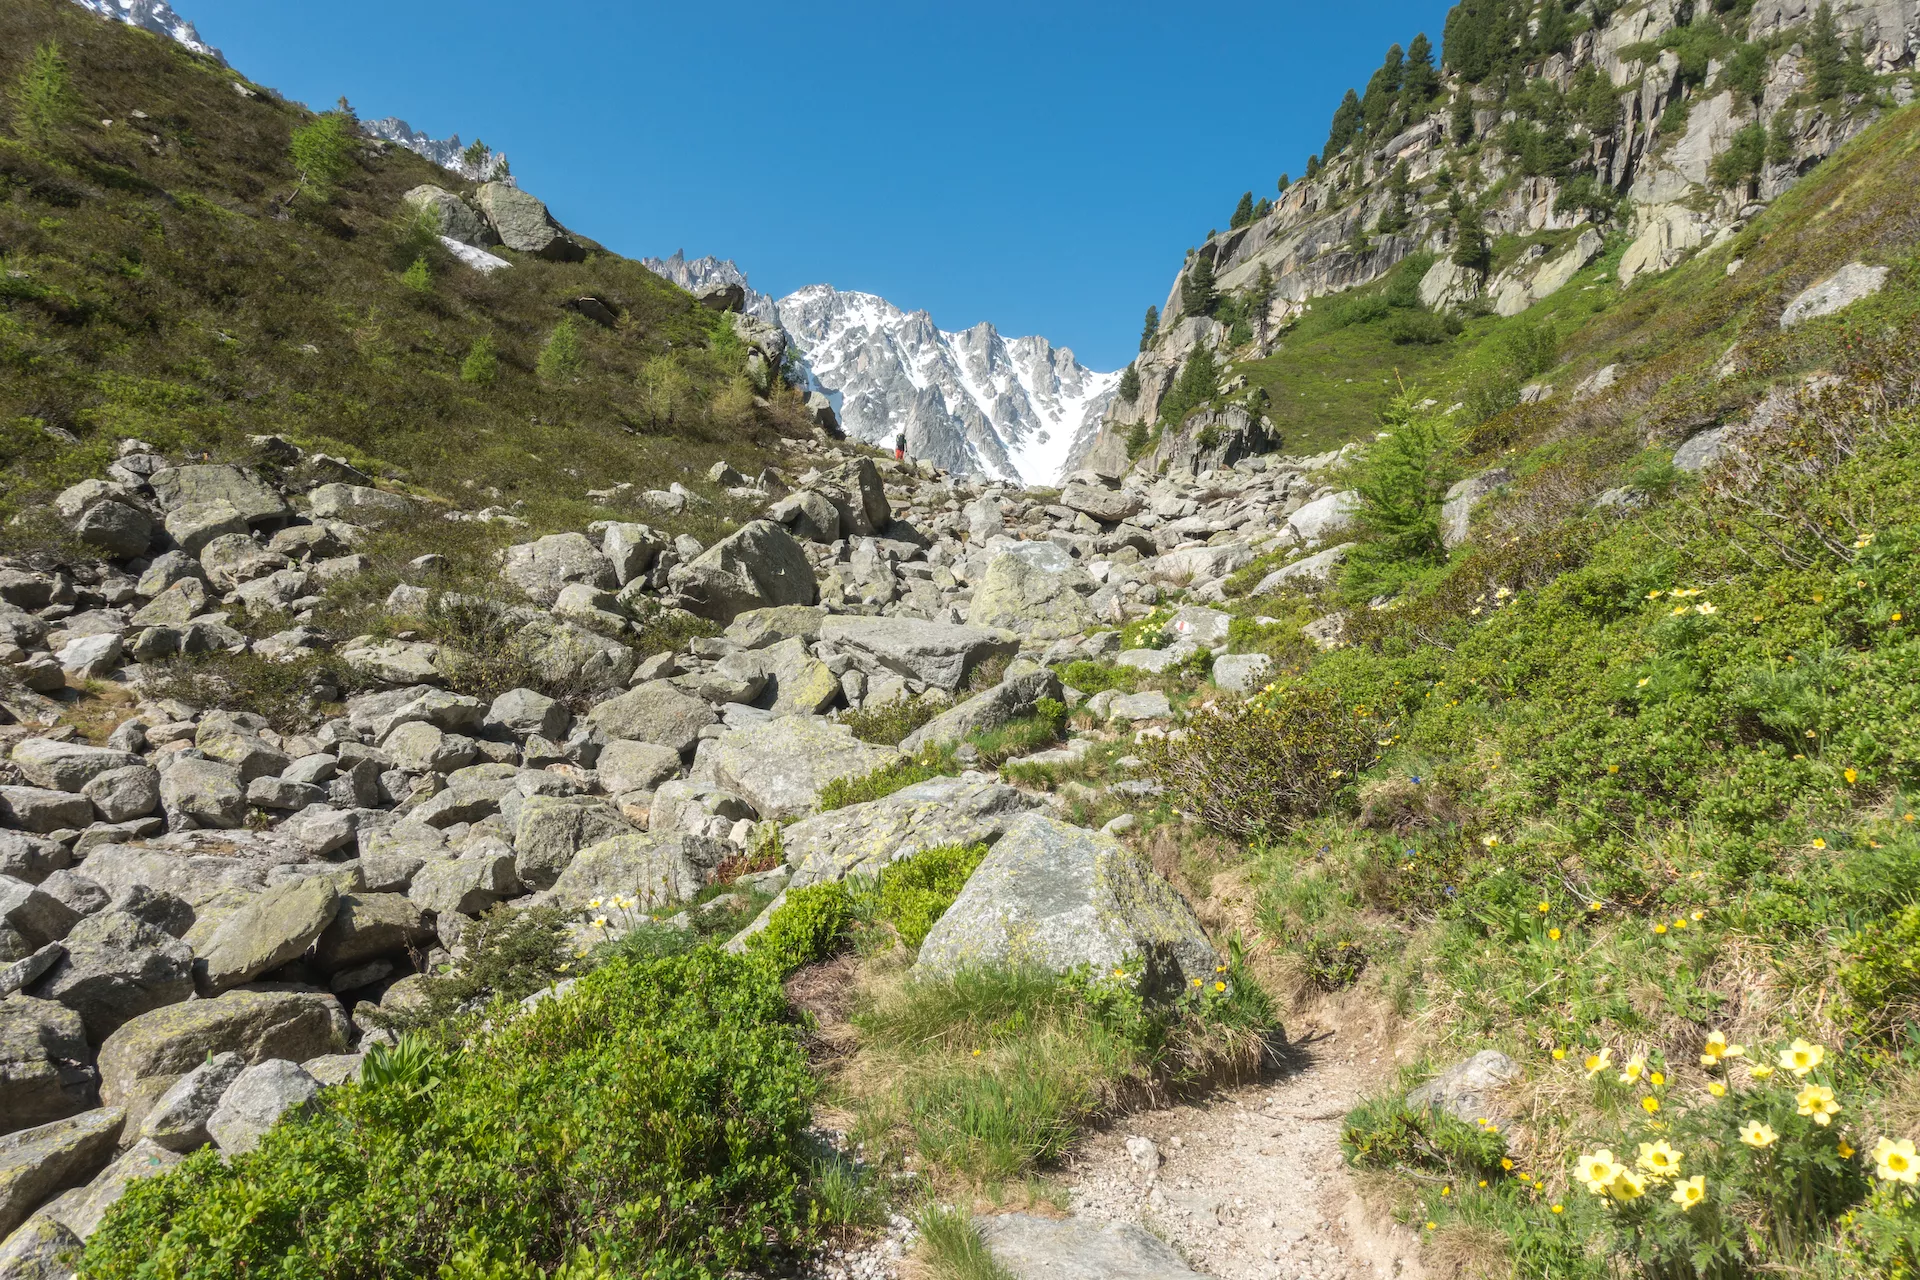 Крутая горная тропа, ведущая на вершину весной Фенетр д'Арпетт